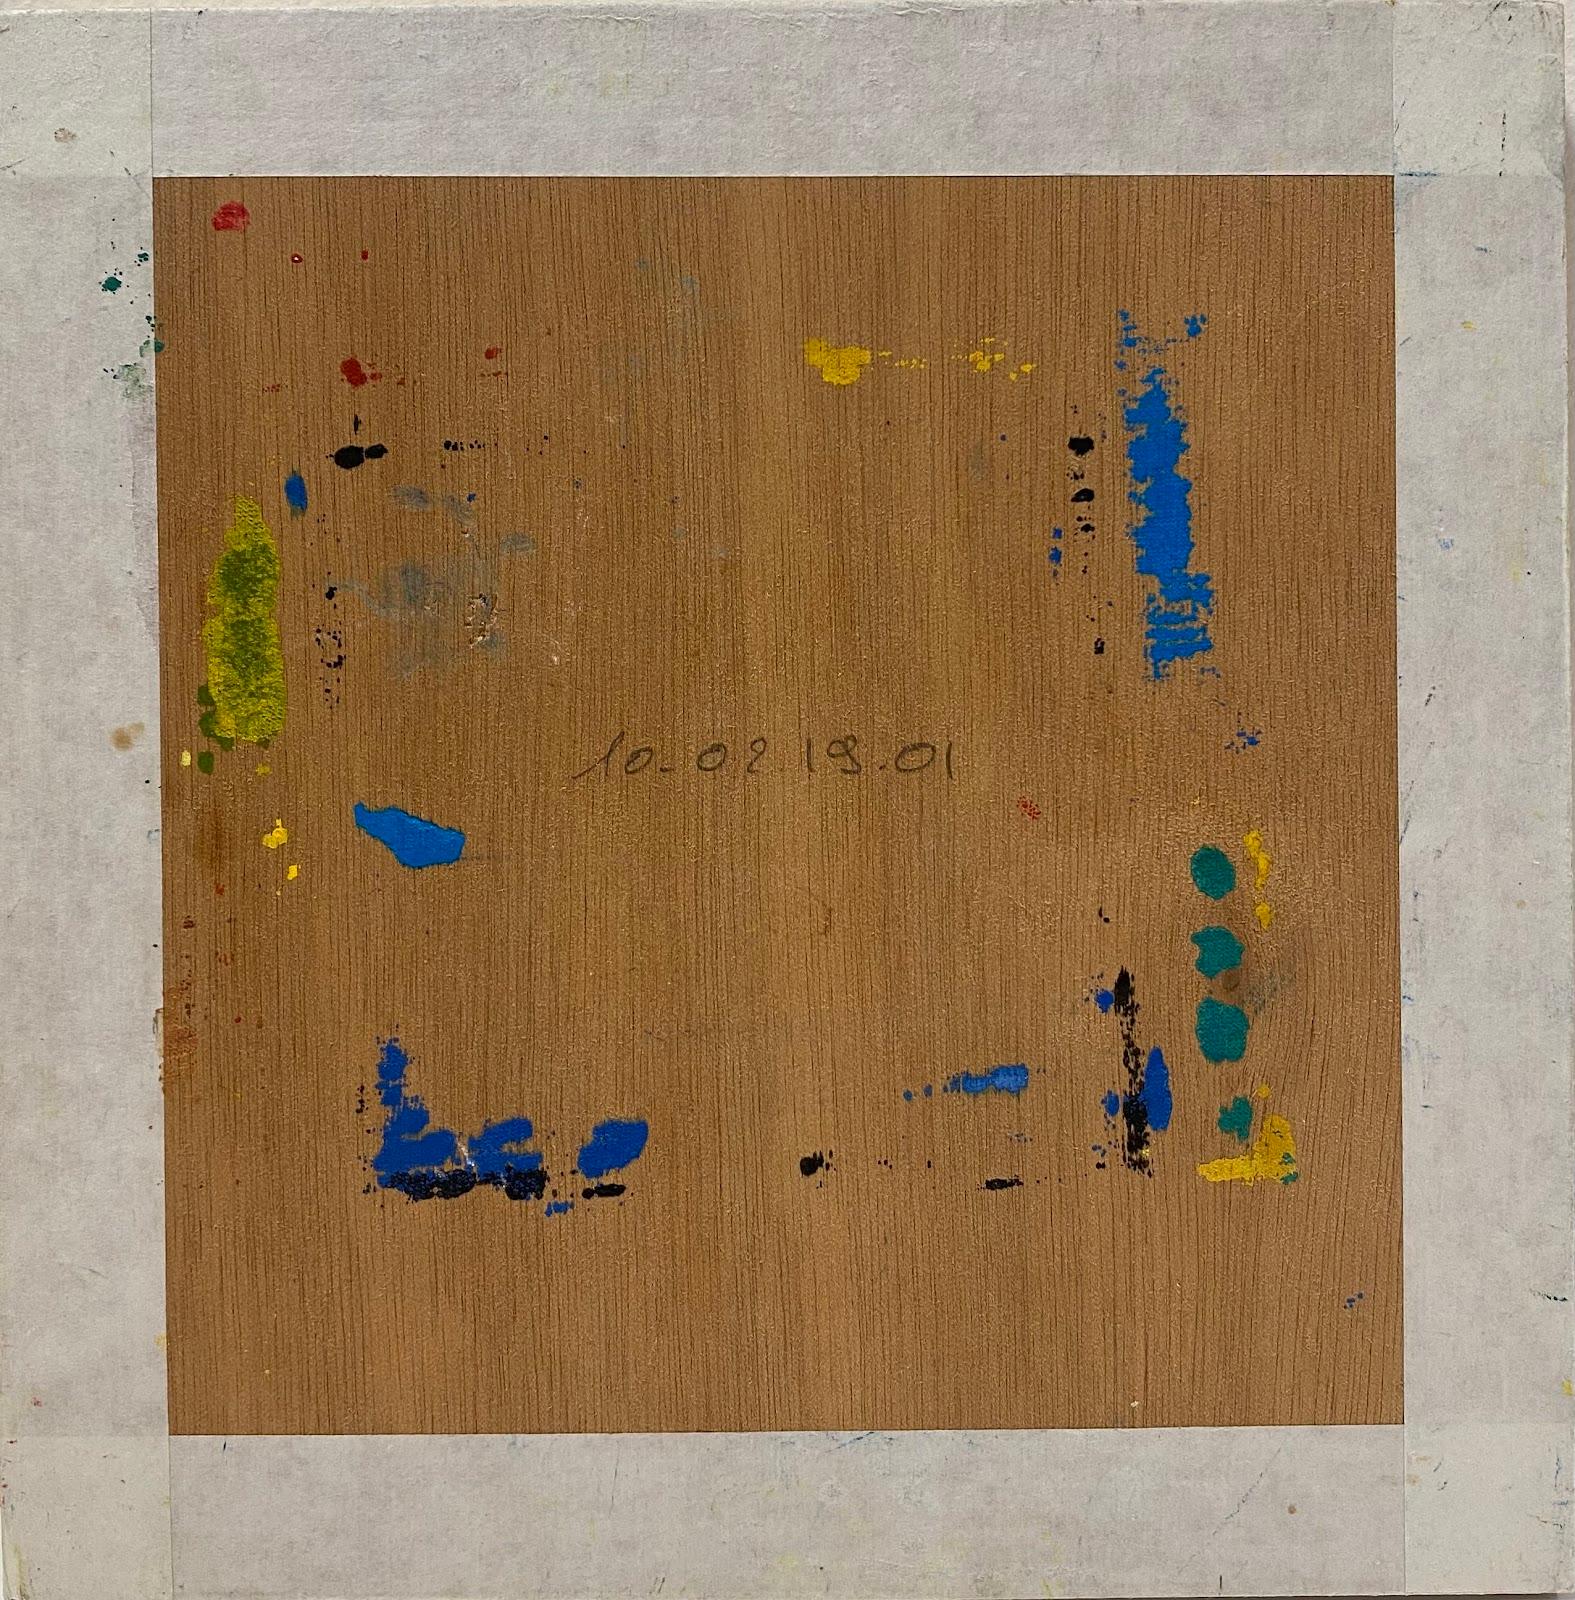 Composition expressionniste abstraite
par Jacques COULAIS (1955-2011)
peinture à la gouache sur carton épais
non encadré : 8 x 8 pouces
état : excellent
provenance : tous les tableaux de cet artiste que nous avons en vente proviennent du Studio de